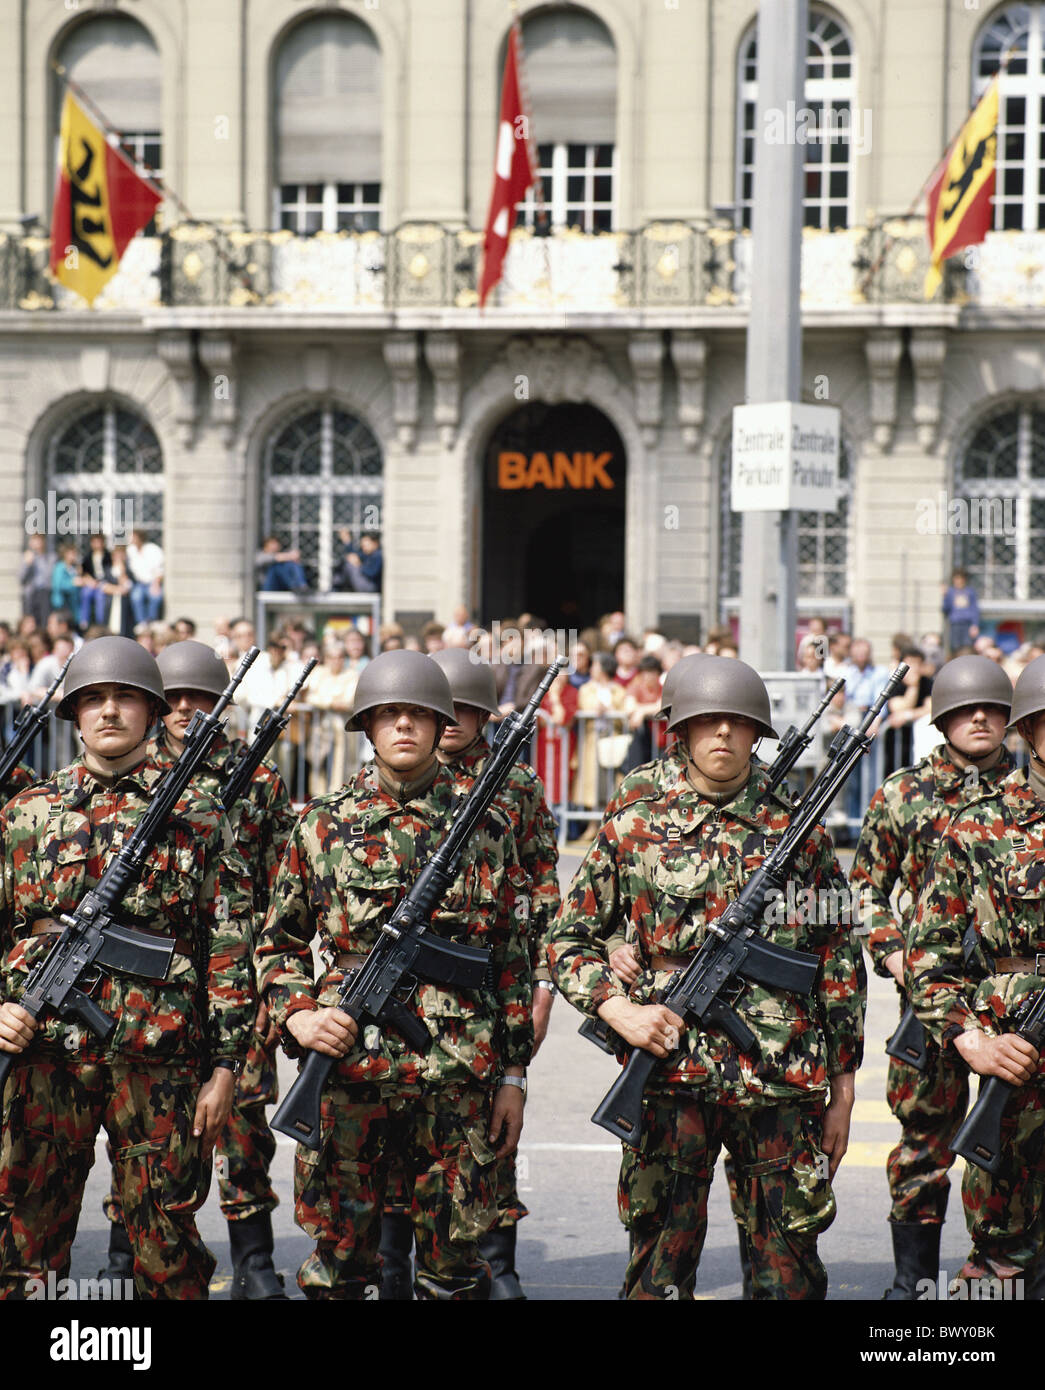 Armee Militär Bern Garde der Ehre militärische Schweiz Europa  Stockfotografie - Alamy